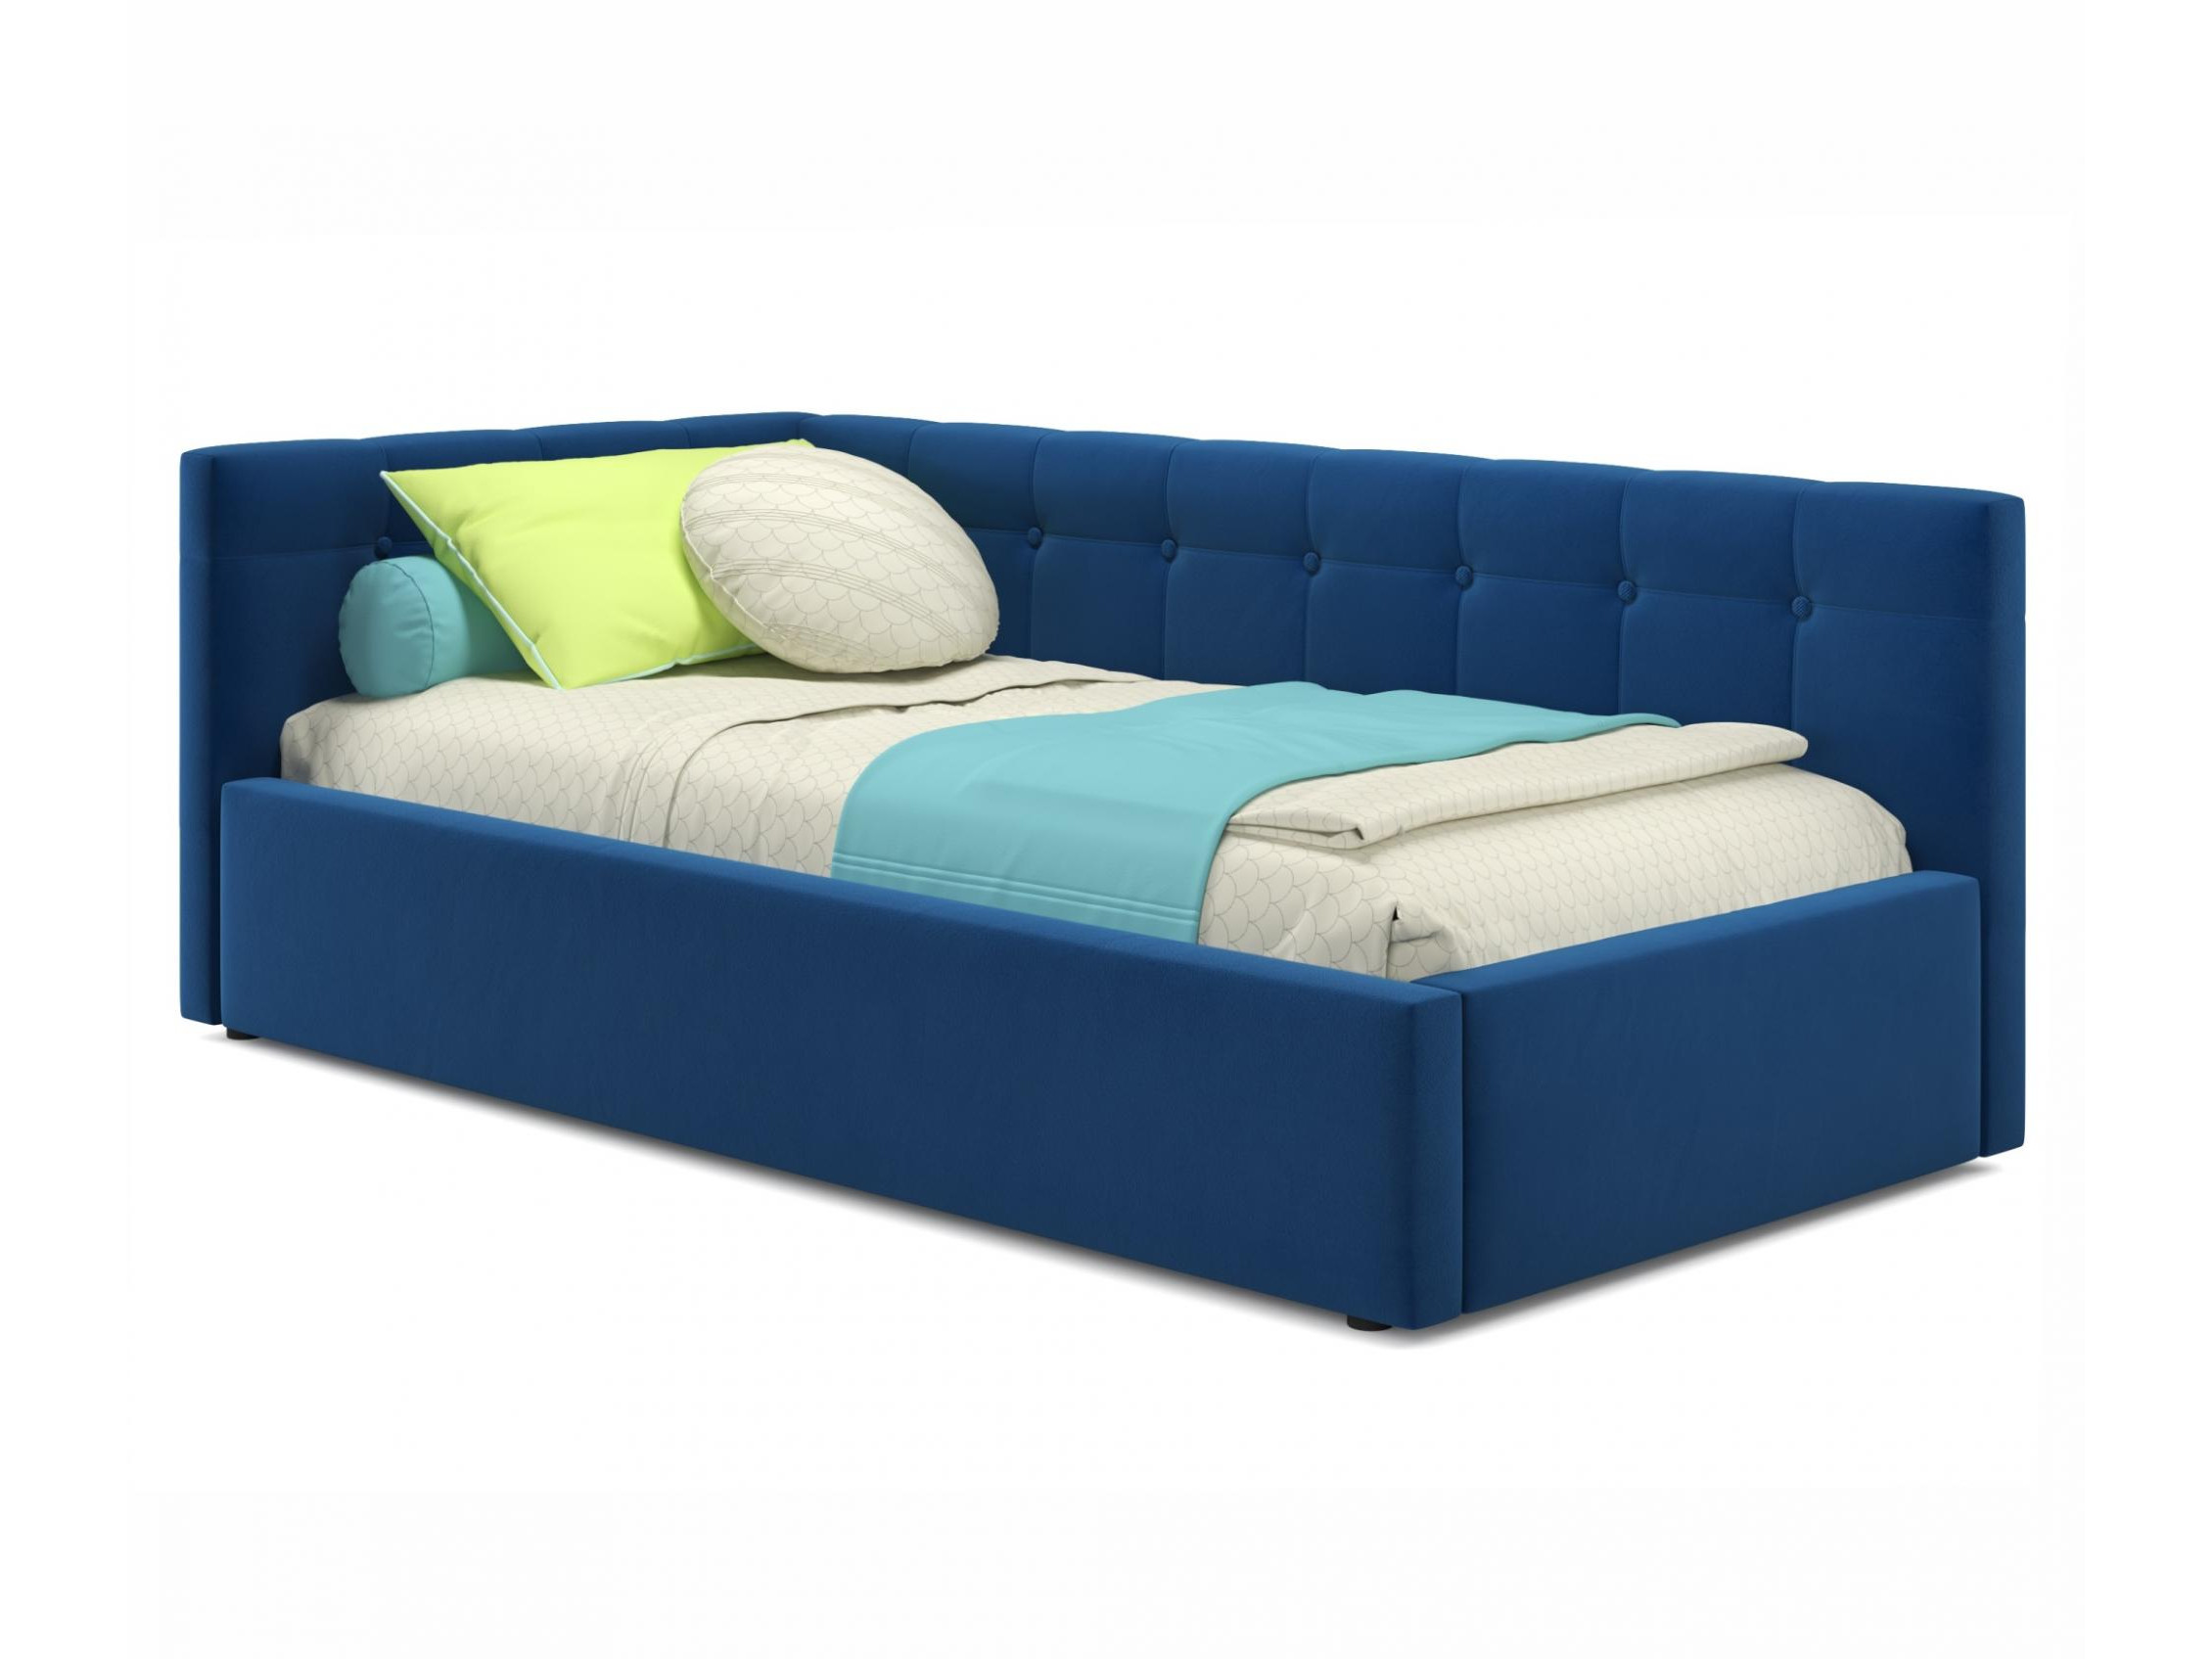 Односпальная кровать-тахта Bonna 900 синяя с подъемным механизмом синий, Синий, Велюр, ДСП